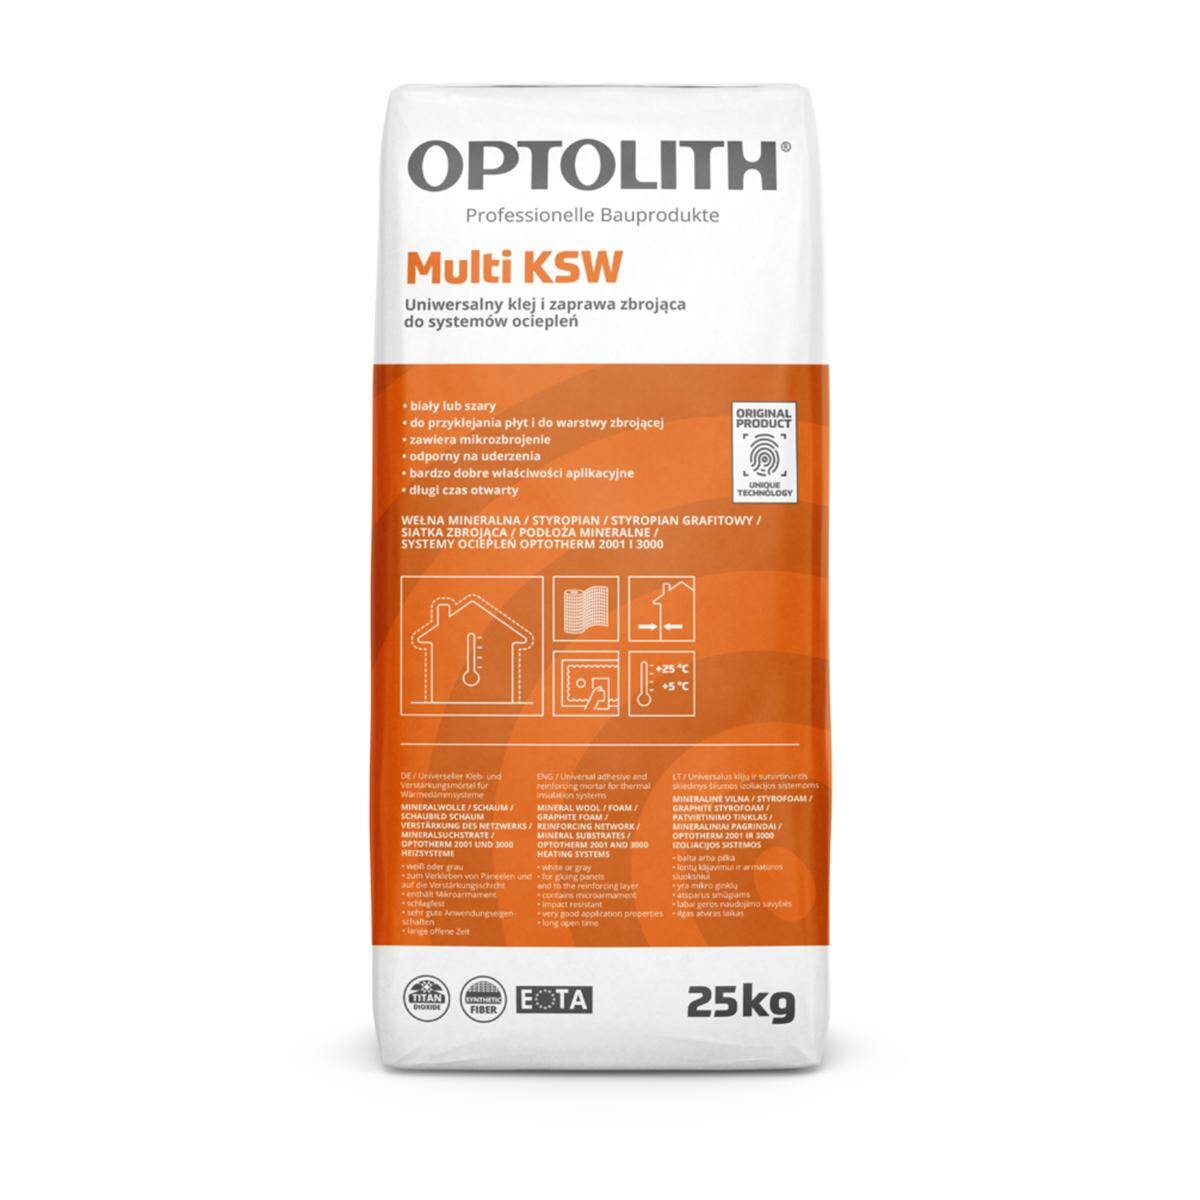 Klej do styropianu i systemów ociepleń Optotherm Multi KSW 25 kg biały OPTOLITH